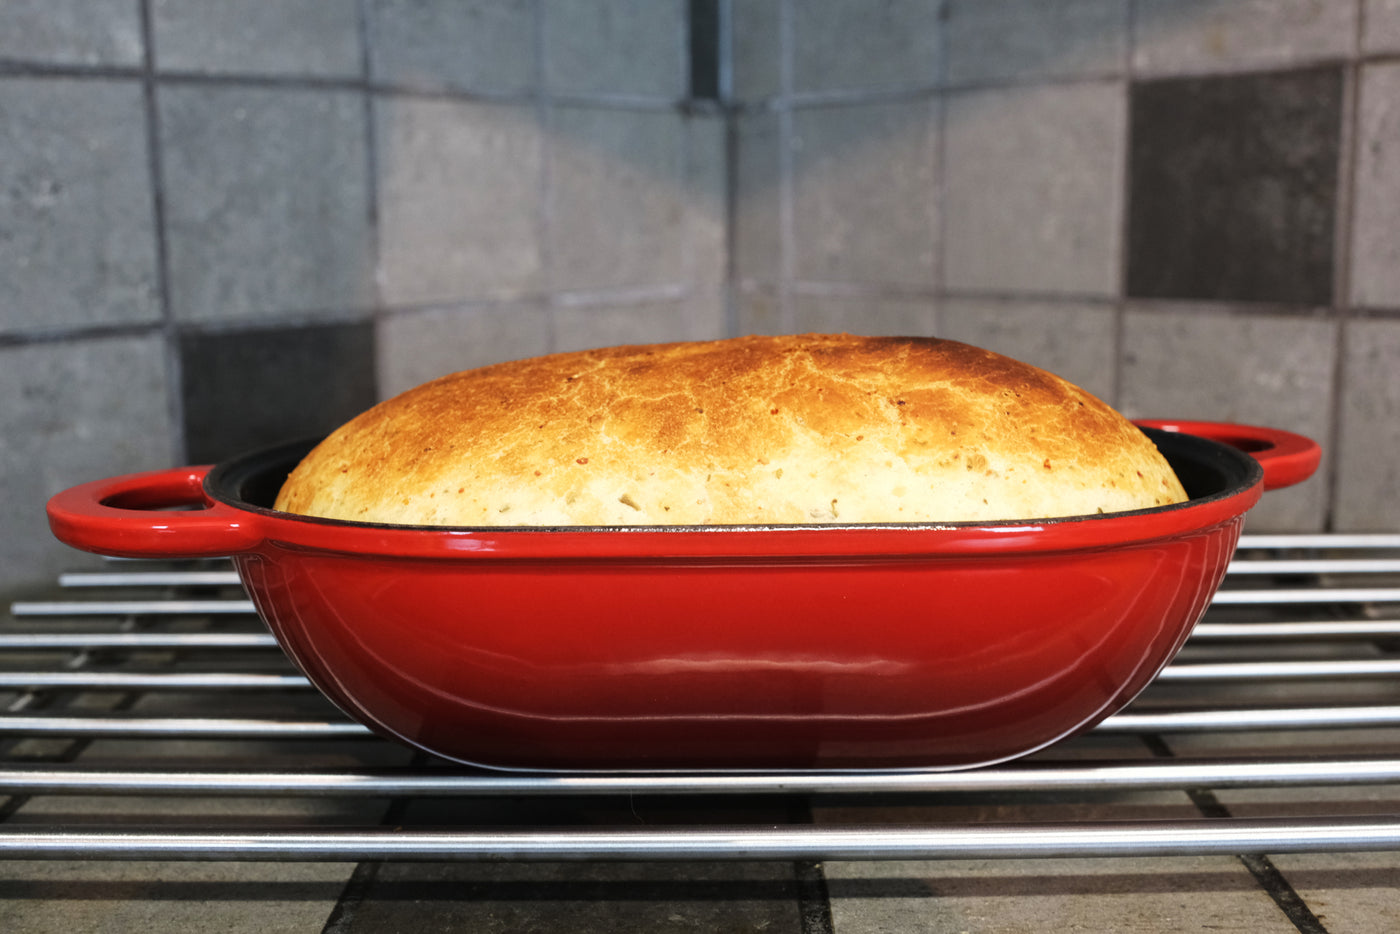 Molde para pan de hierro fundido esmaltado con tapa, rojo, forma apta para horno para hornear, kit de pan artesanal - Molde para pan